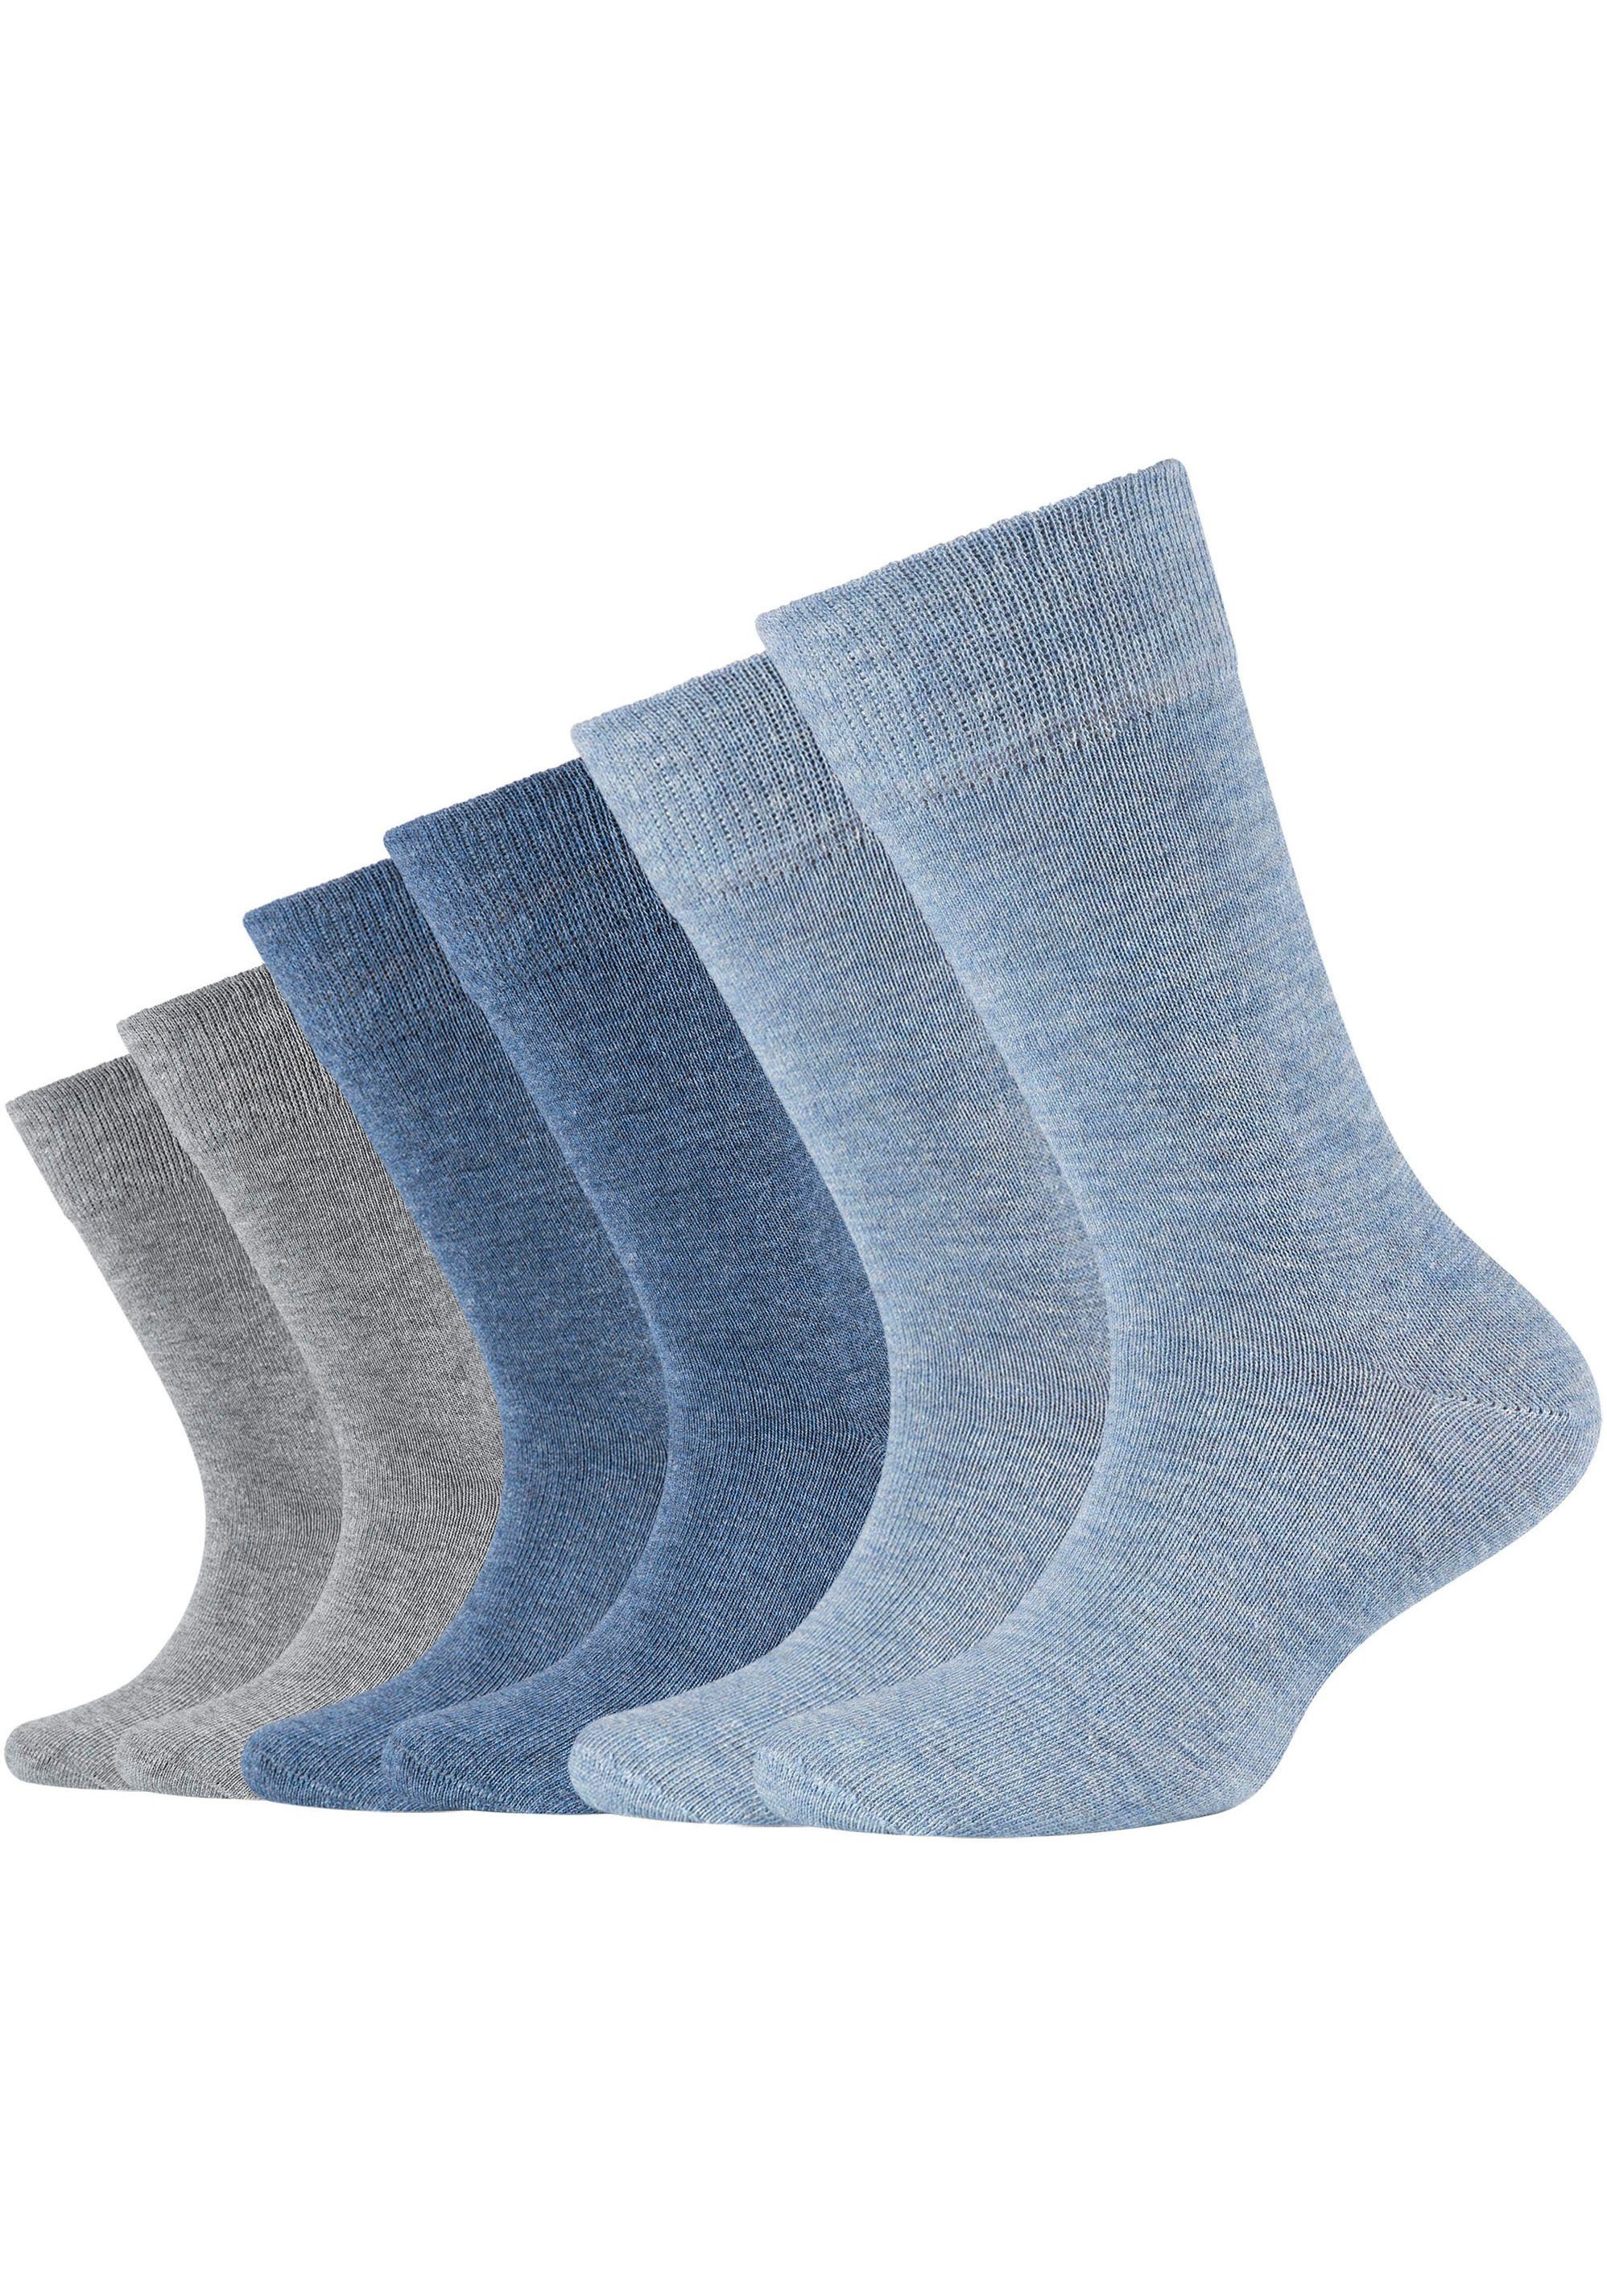 Camano Socken (Packung, 6-Paar) Hoher gekämmter an Anteil Baumwolle meliert jeans-mix